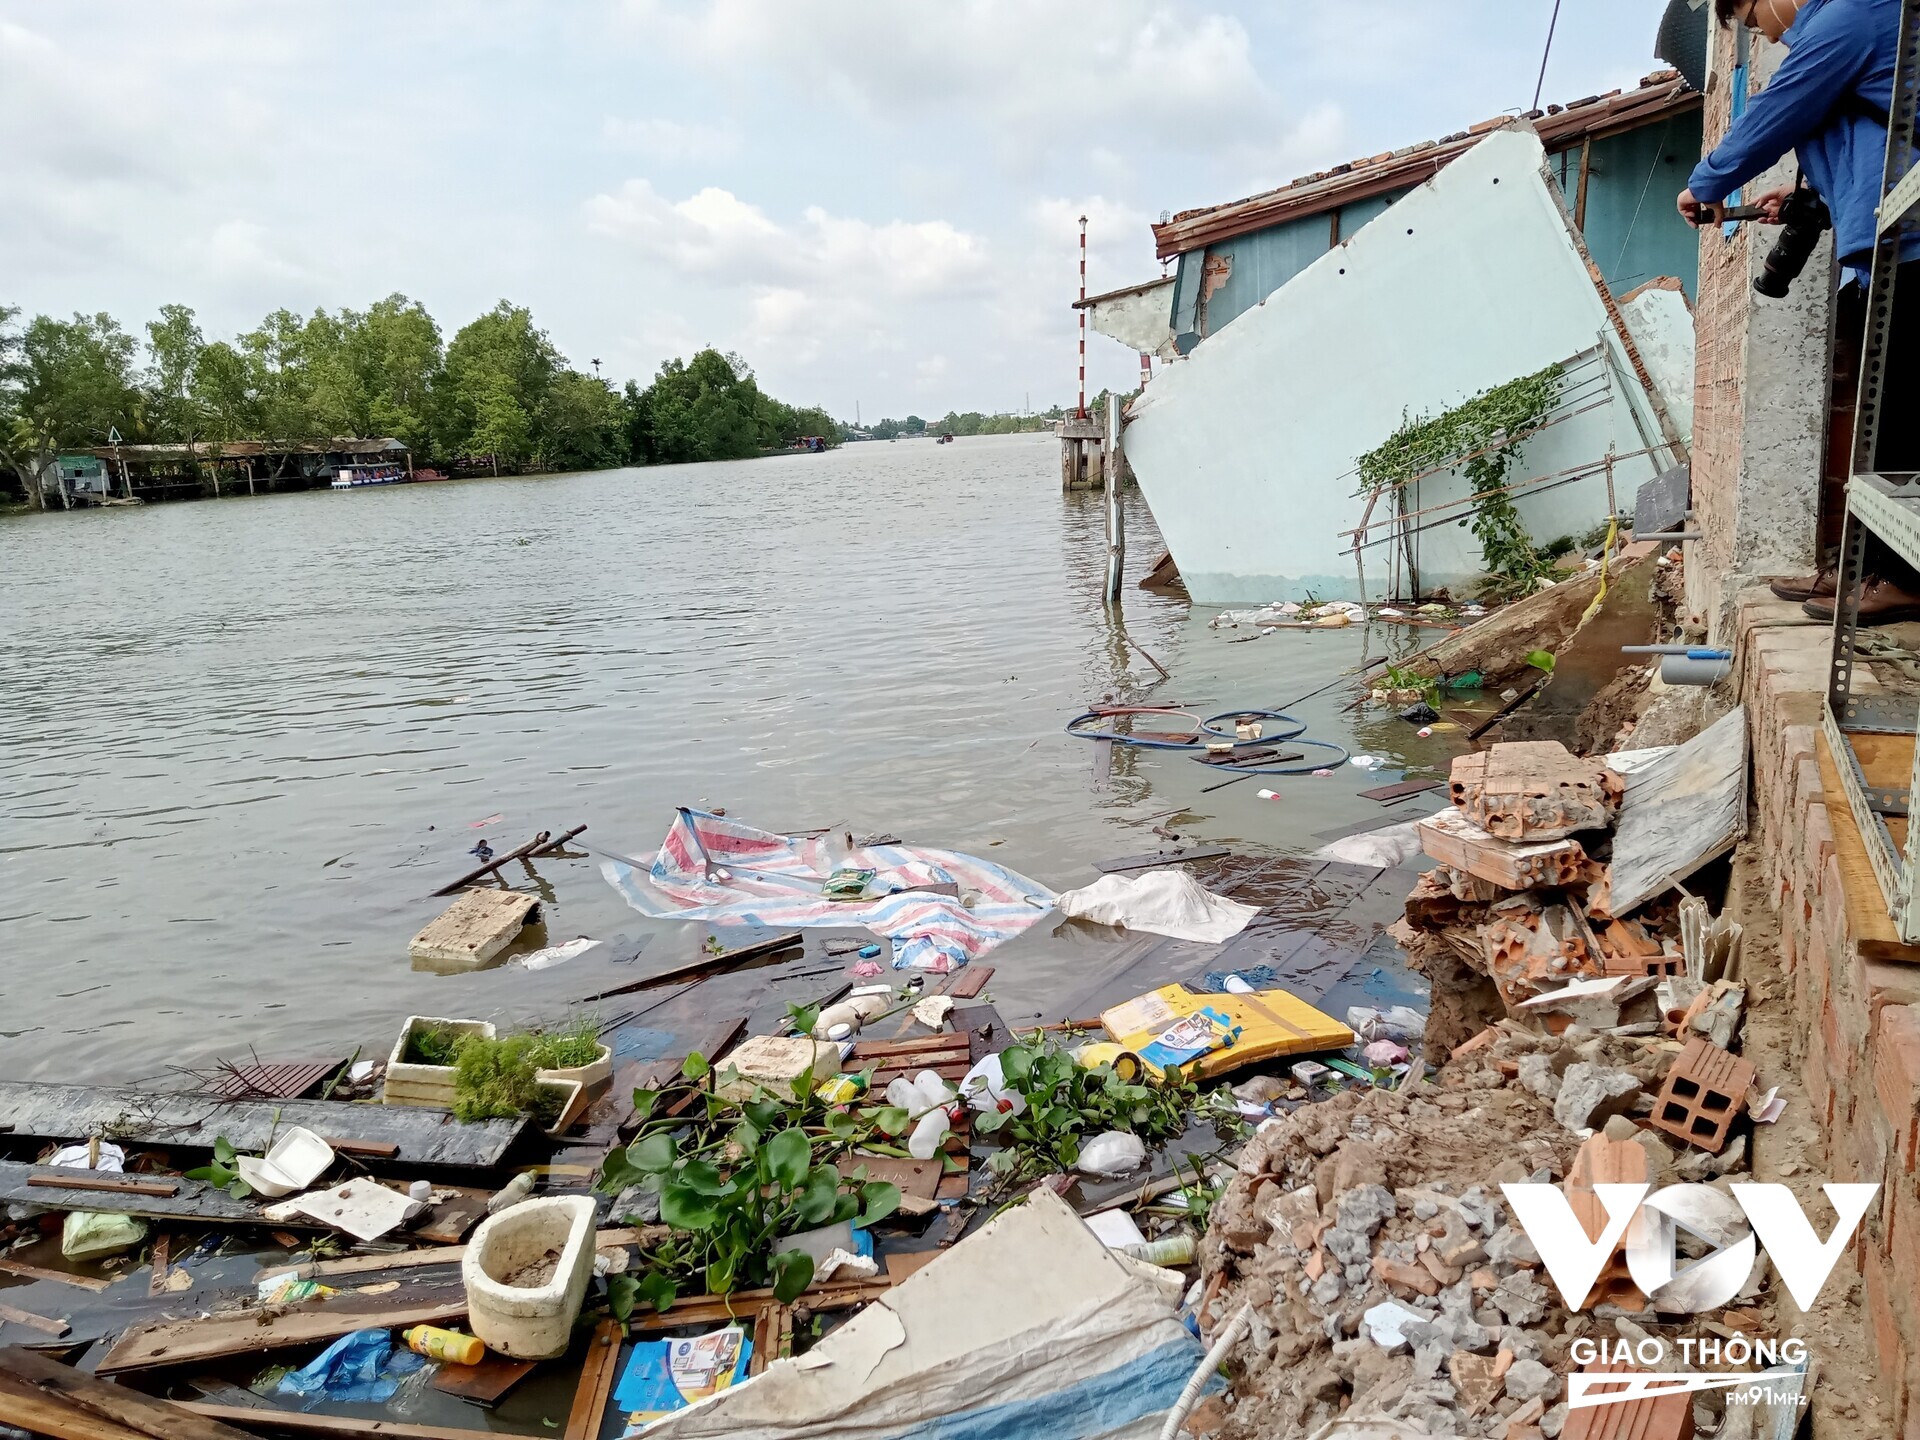 Sông cần Thơ đoạn qua Phường An Bình ( Ninh Kiều) và xã Mỹ Khánh (Phong Điền) từ năm 2013 đến nay đã xảy ra nhiều vụ sạt lở, người dân mất tài sản nhà cửa